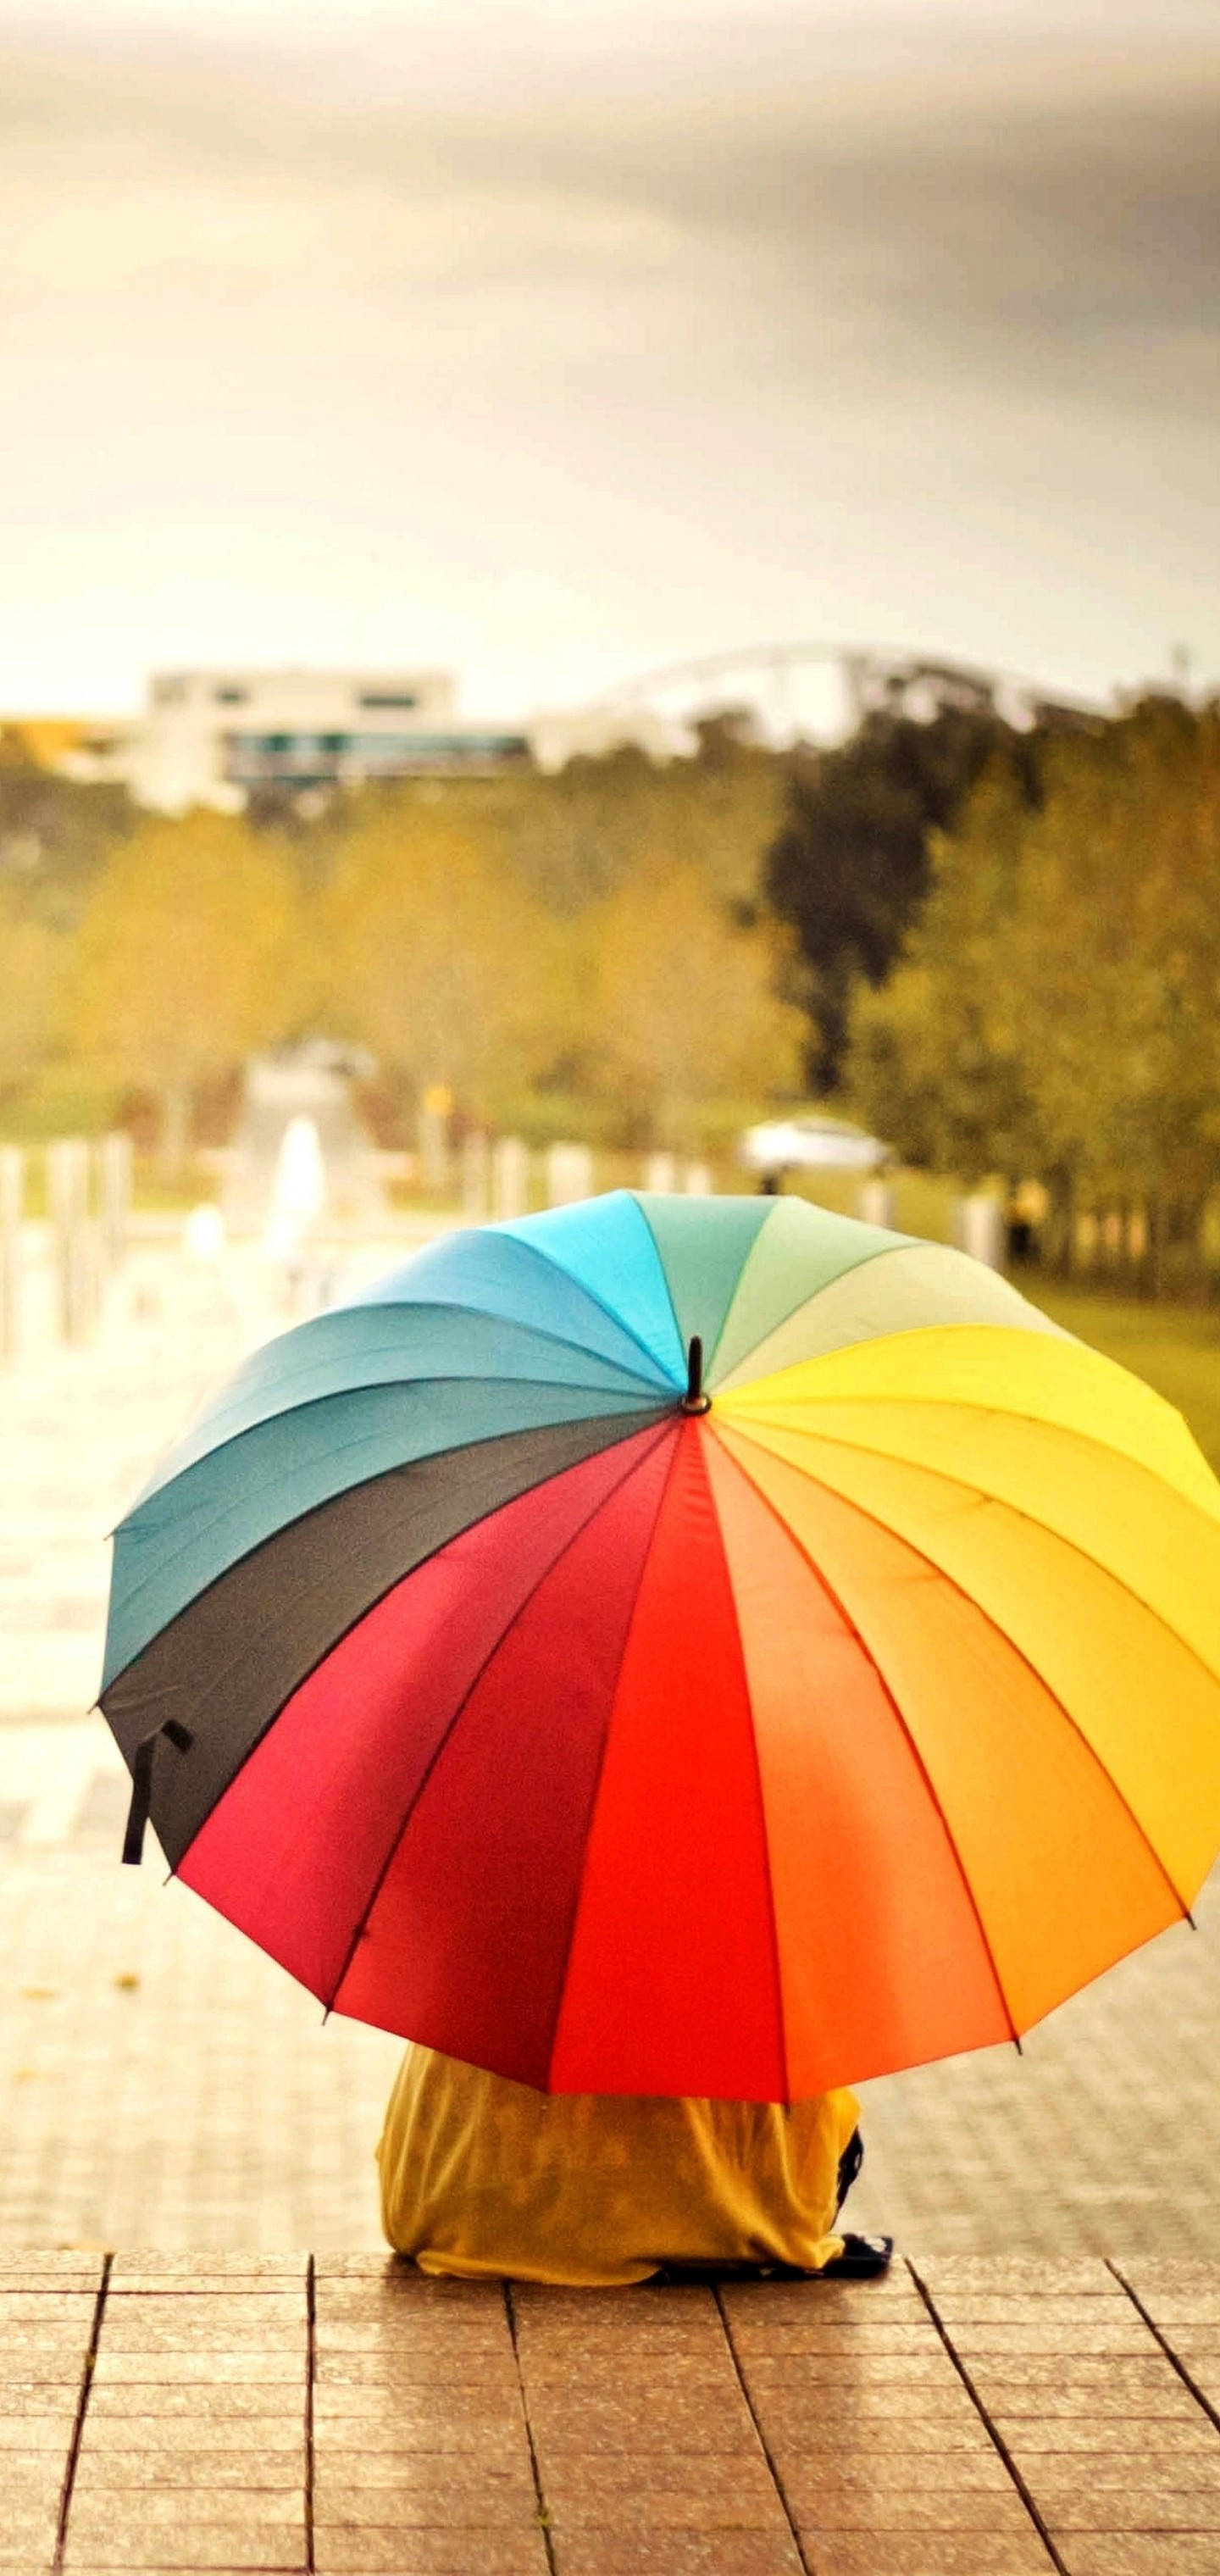 S10 Rainbow Umbrella Background